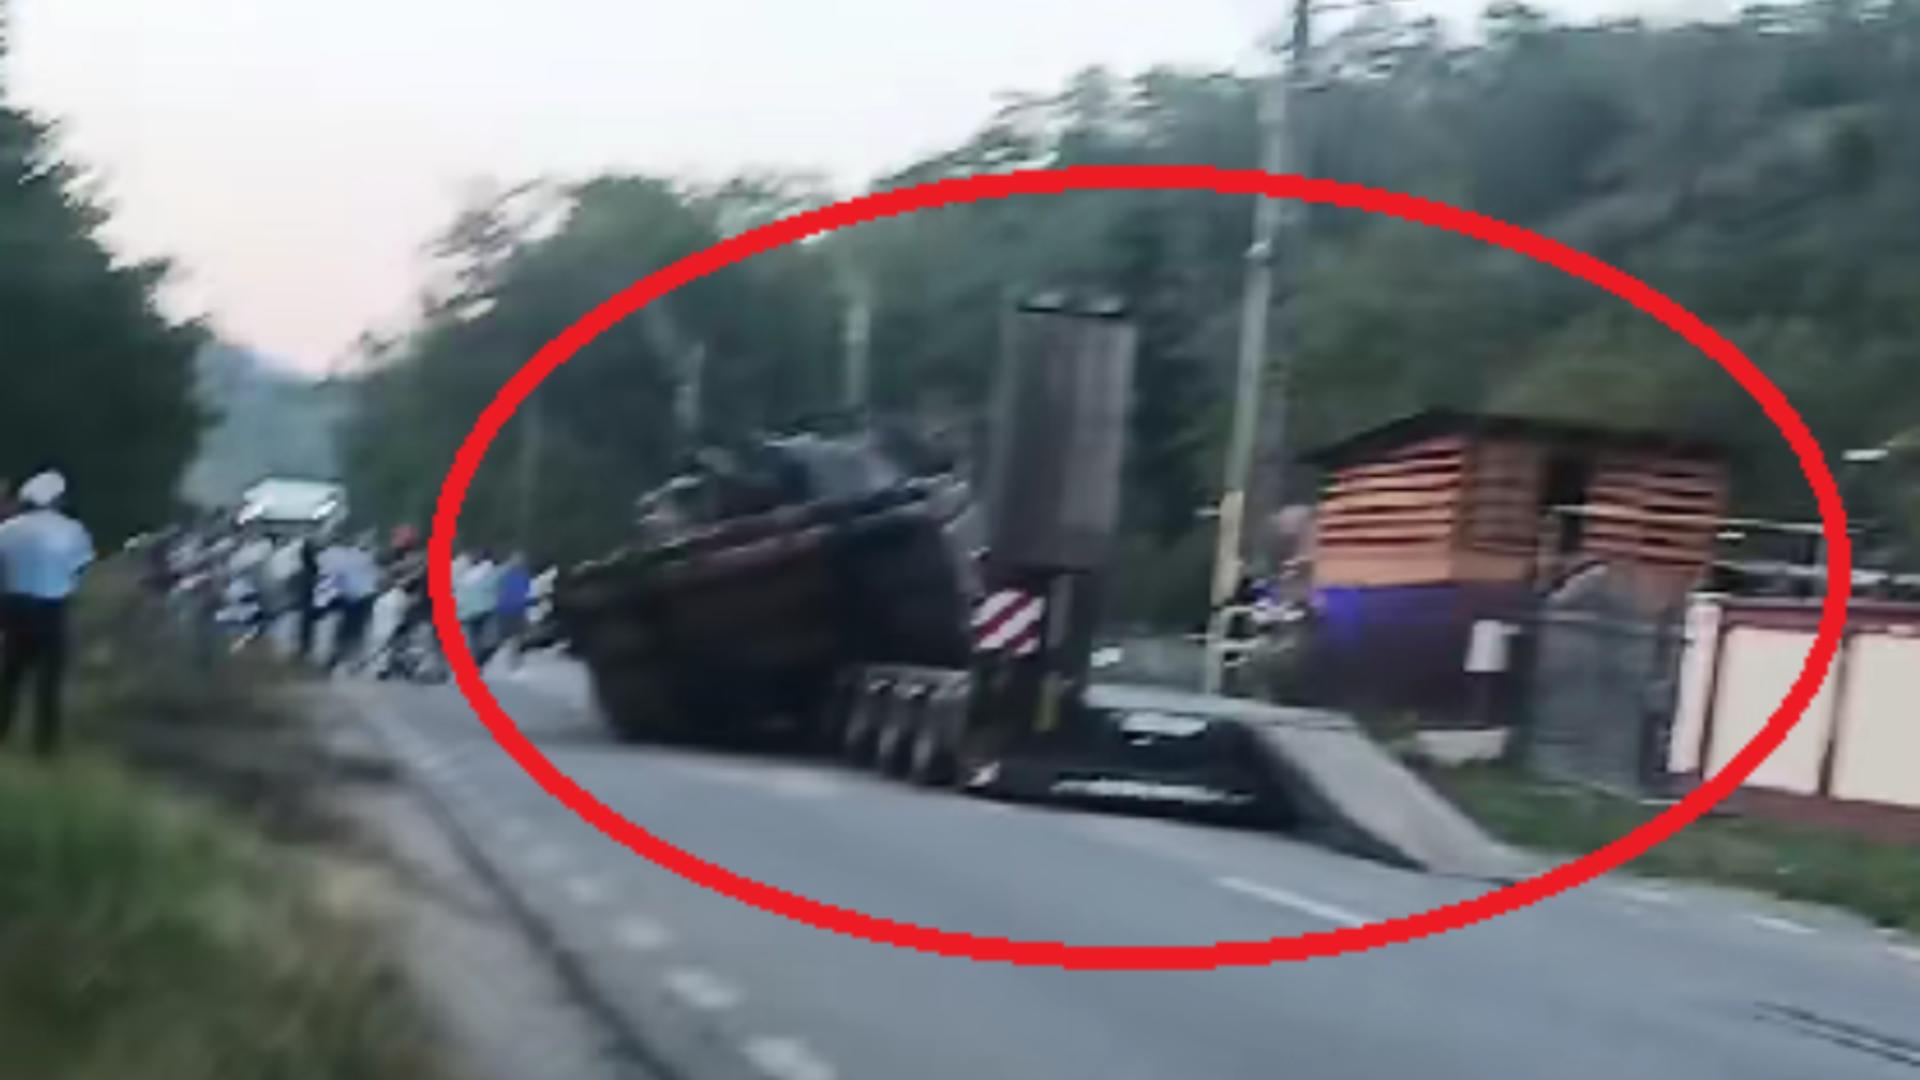 Un tanc a căzut de pe platforma care îl transporta! Șoferul a evitat în ultima clipă un pieton care traversa neregulamentar